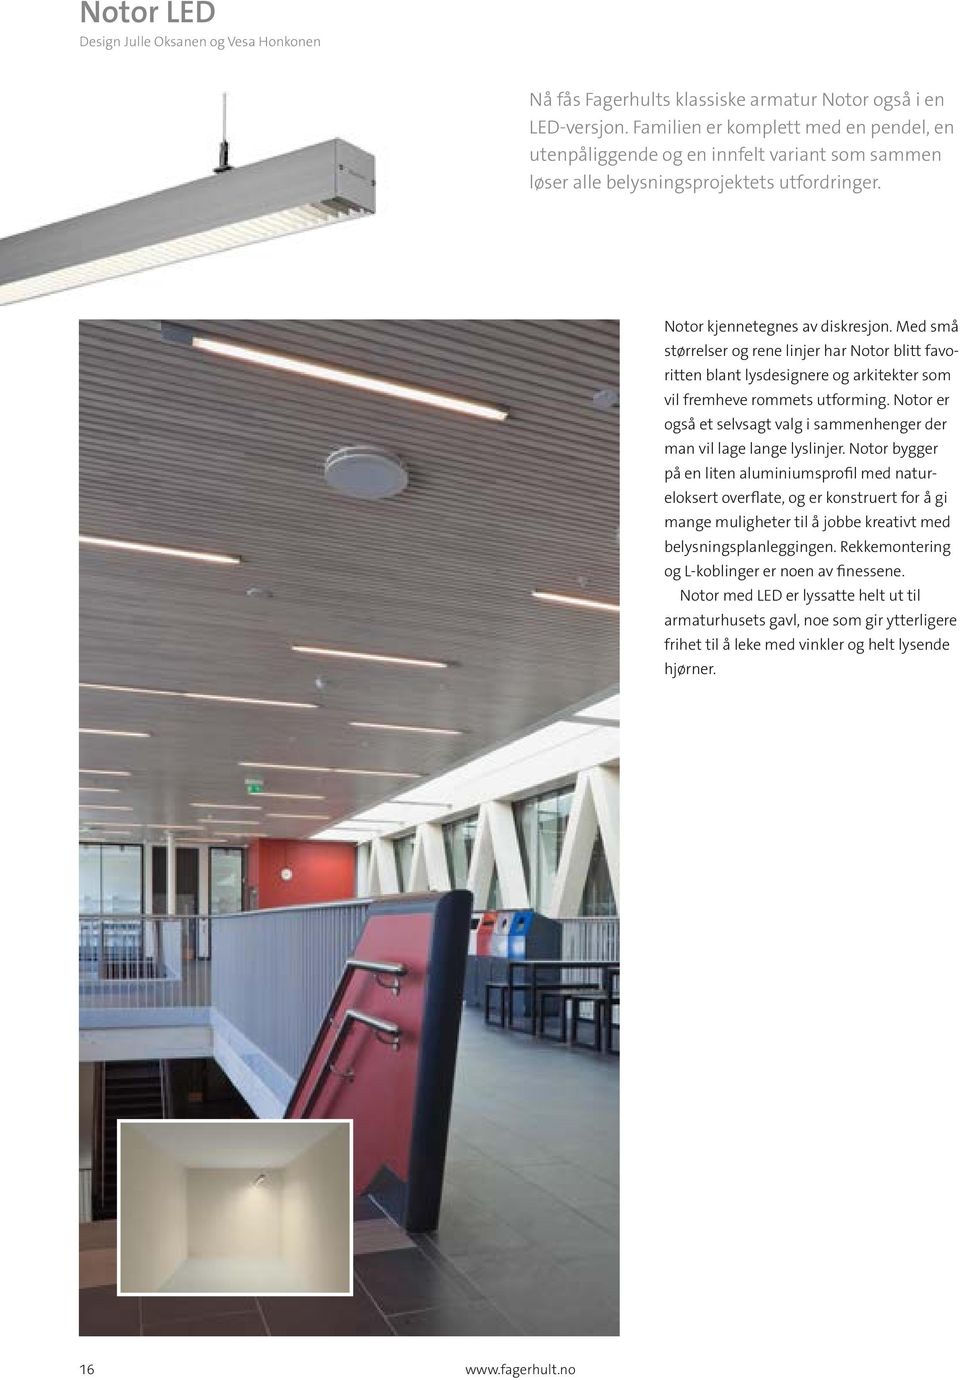 Med små størrelser og rene linjer har Notor blitt favoritten blant lysdesignere og arkitekter som vil fremheve rommets utforming.